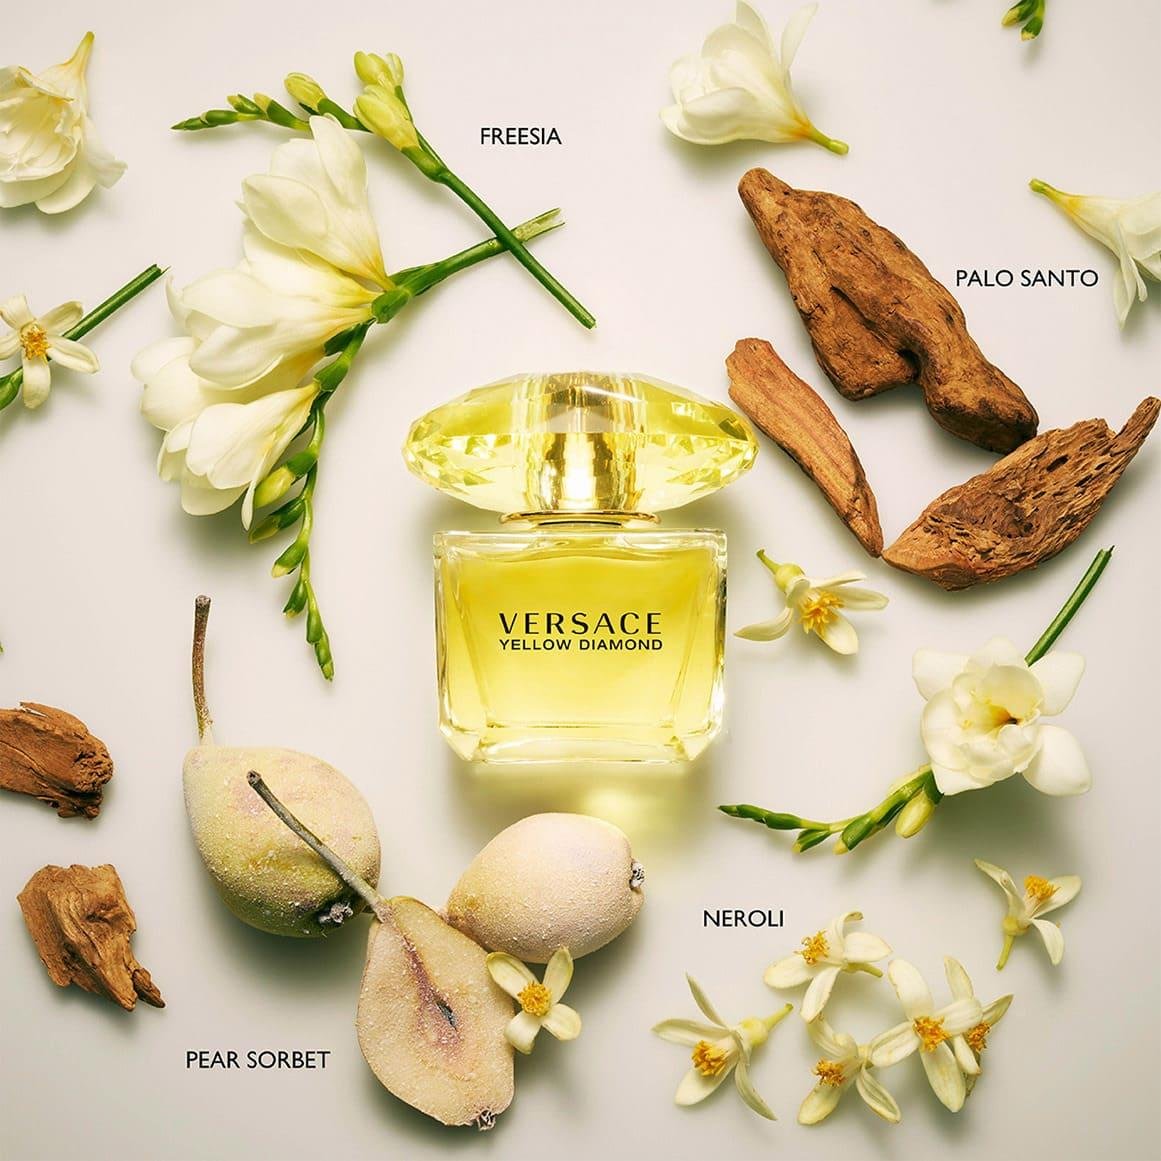 Versace Yellow Diamond mùi hương đẳng cấp là nước hoa nữ giá bình dân dược ưa chuộng hiện nay